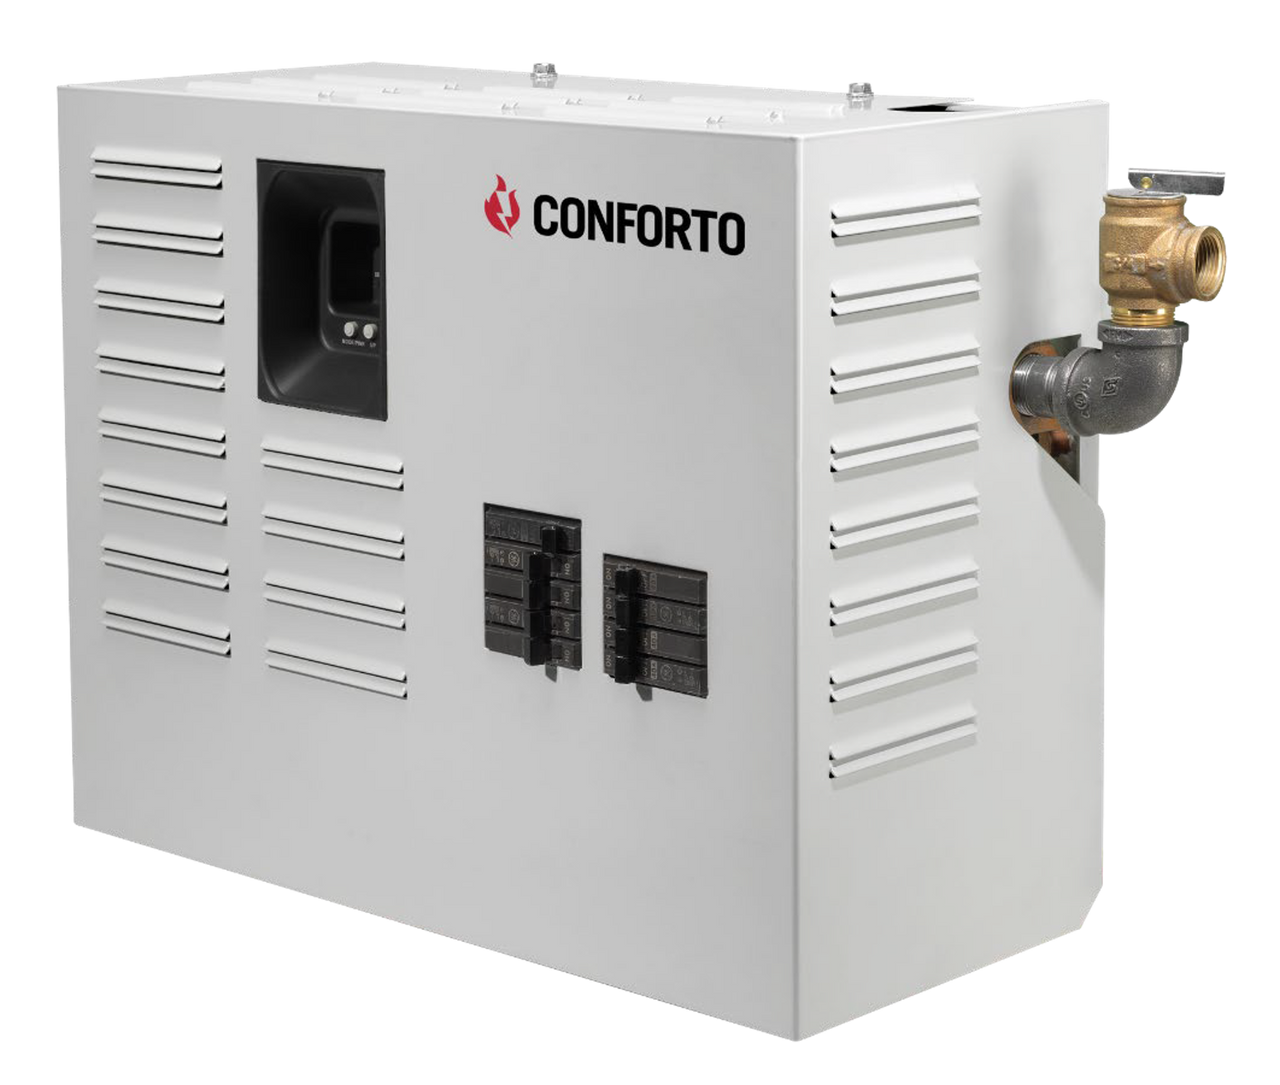 Conforto Electric Cast Iron Boiler